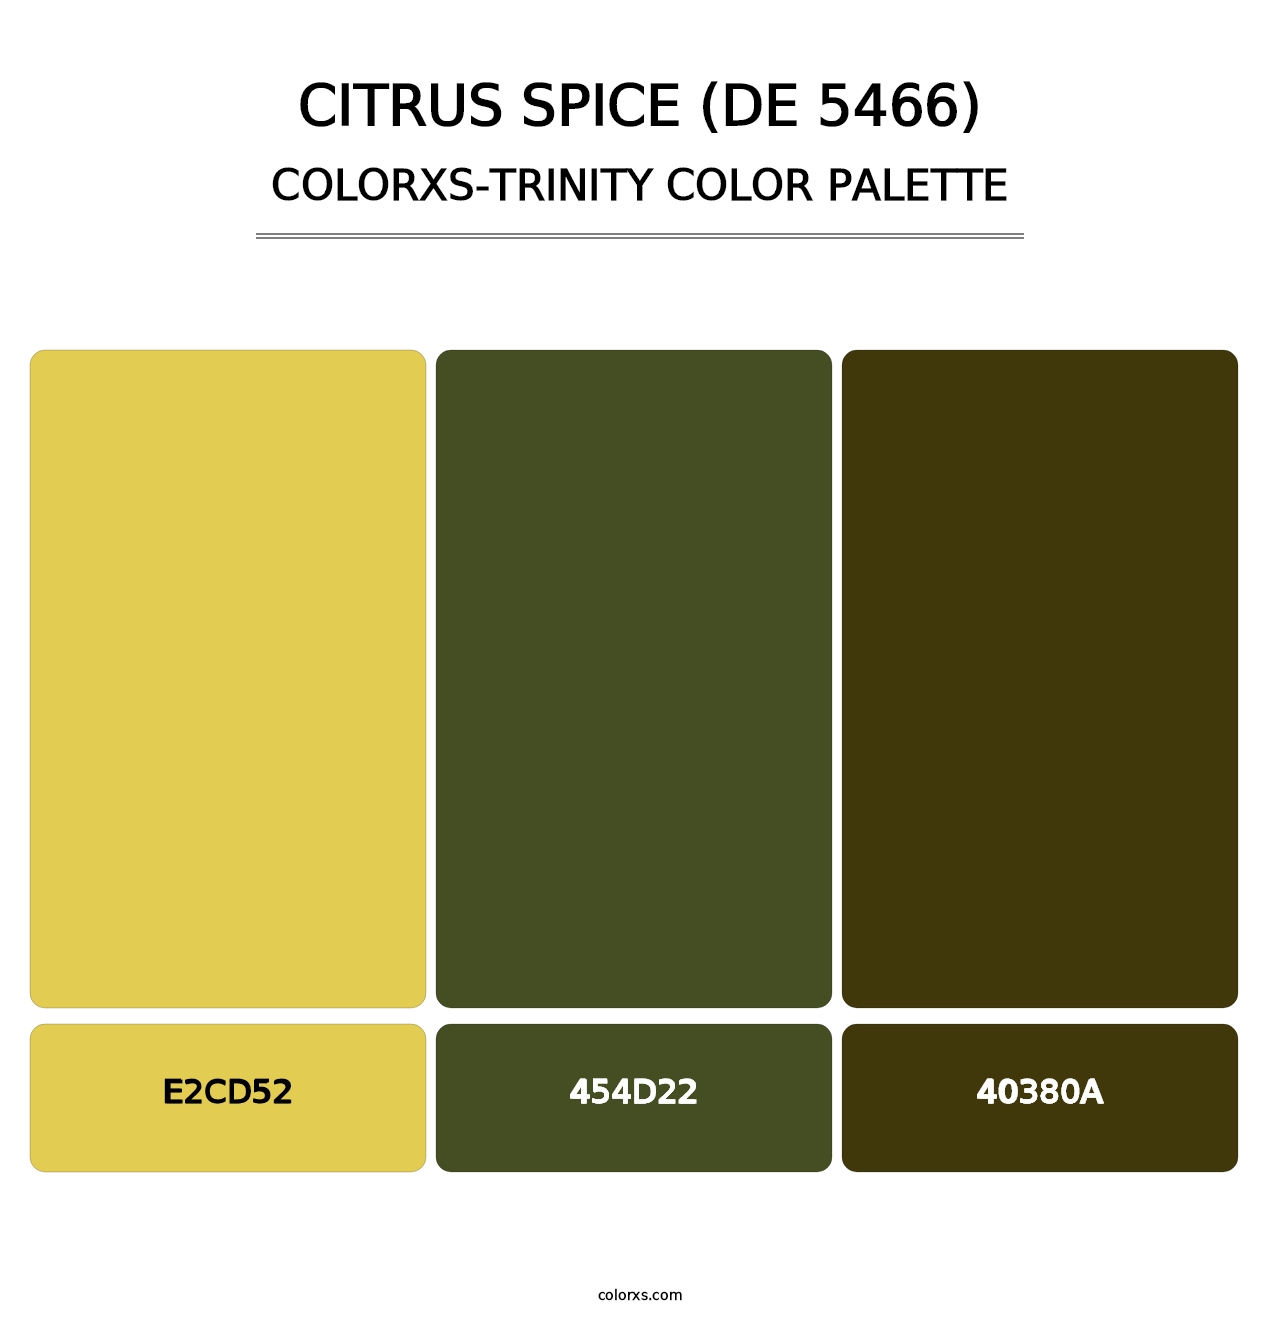 Citrus Spice (DE 5466) - Colorxs Trinity Palette